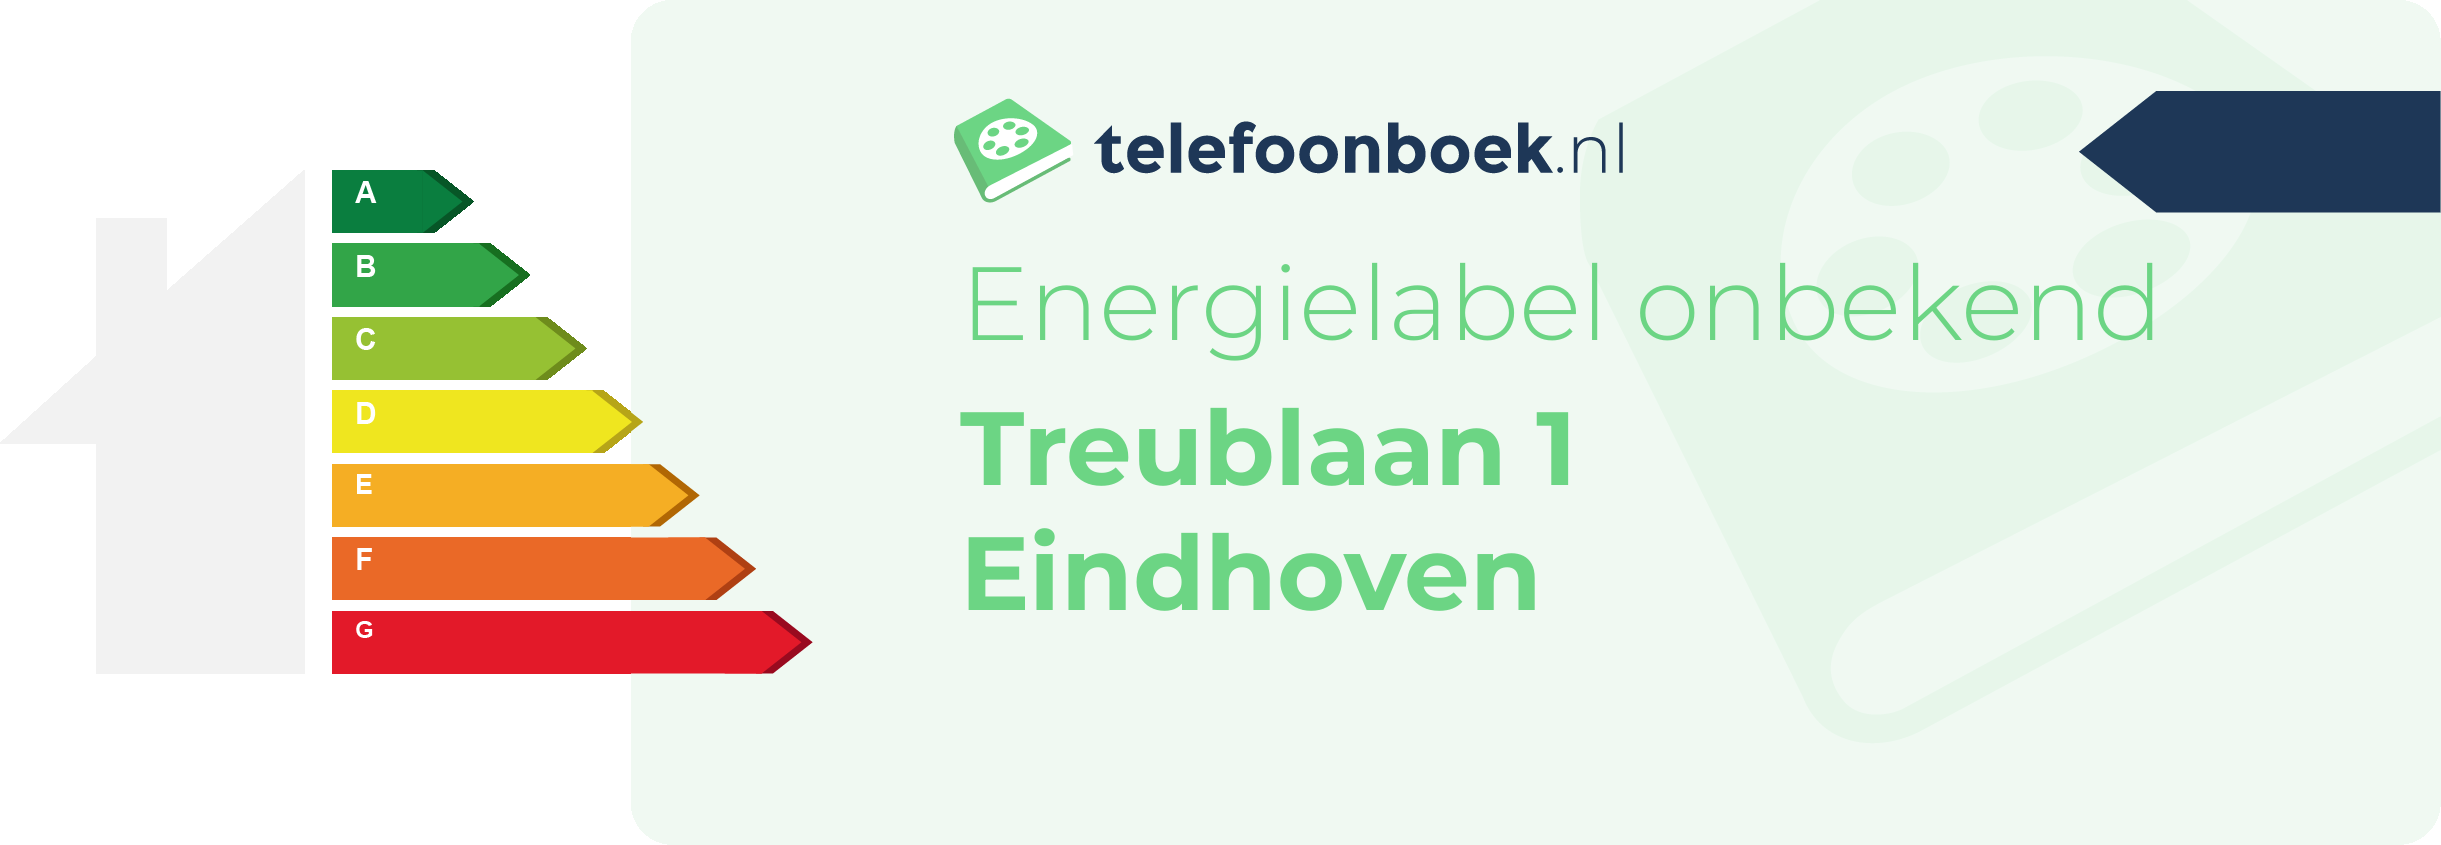 Energielabel Treublaan 1 Eindhoven